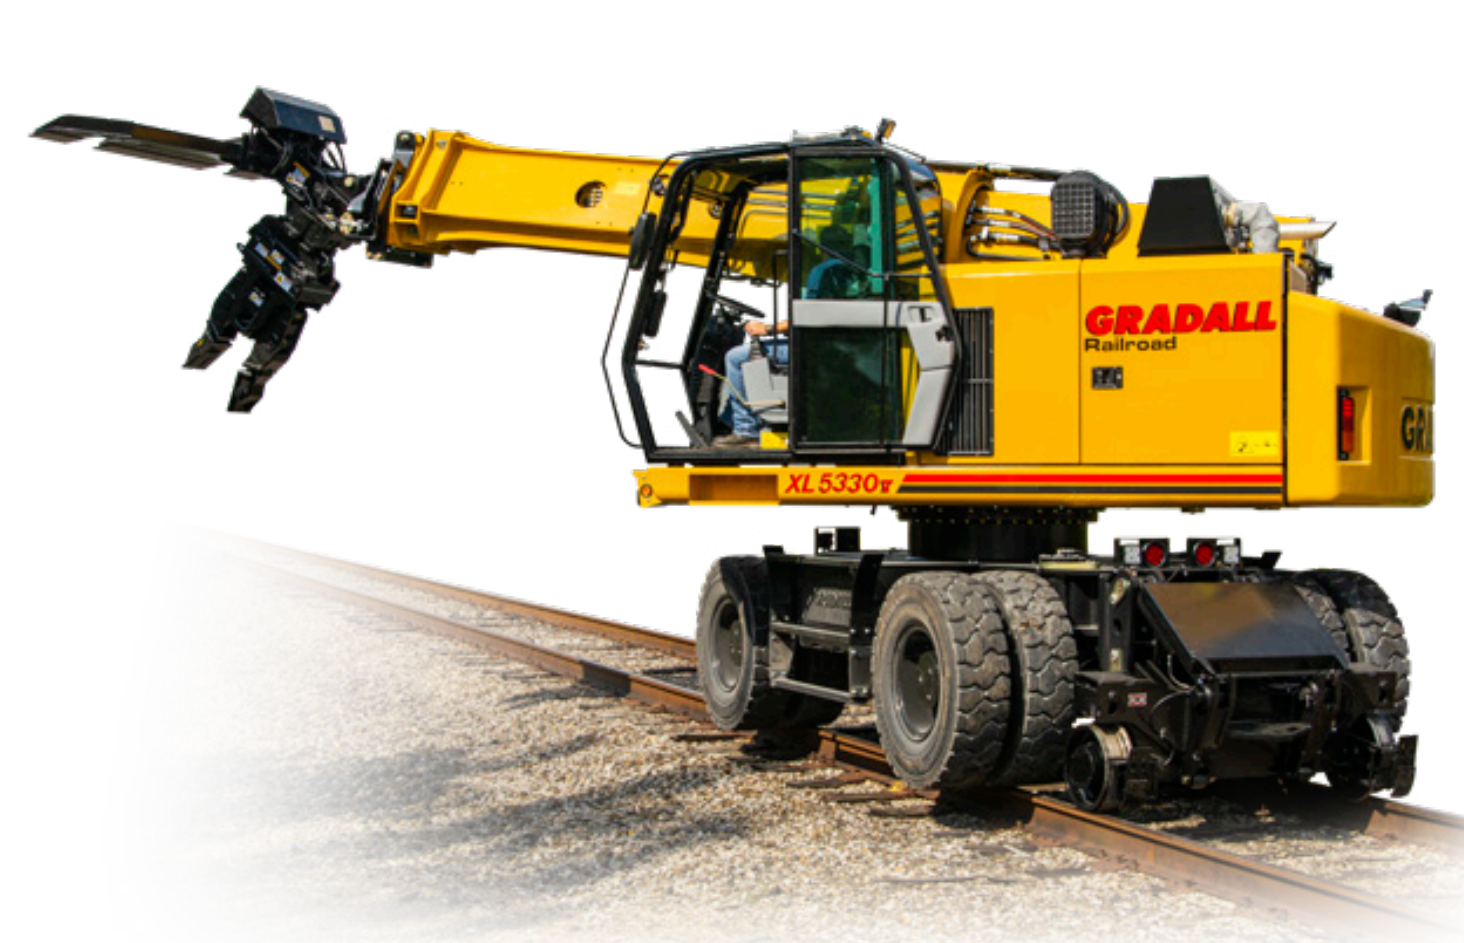 XL 5330 V - Gradall Railway Maintenance Machines - Amaco